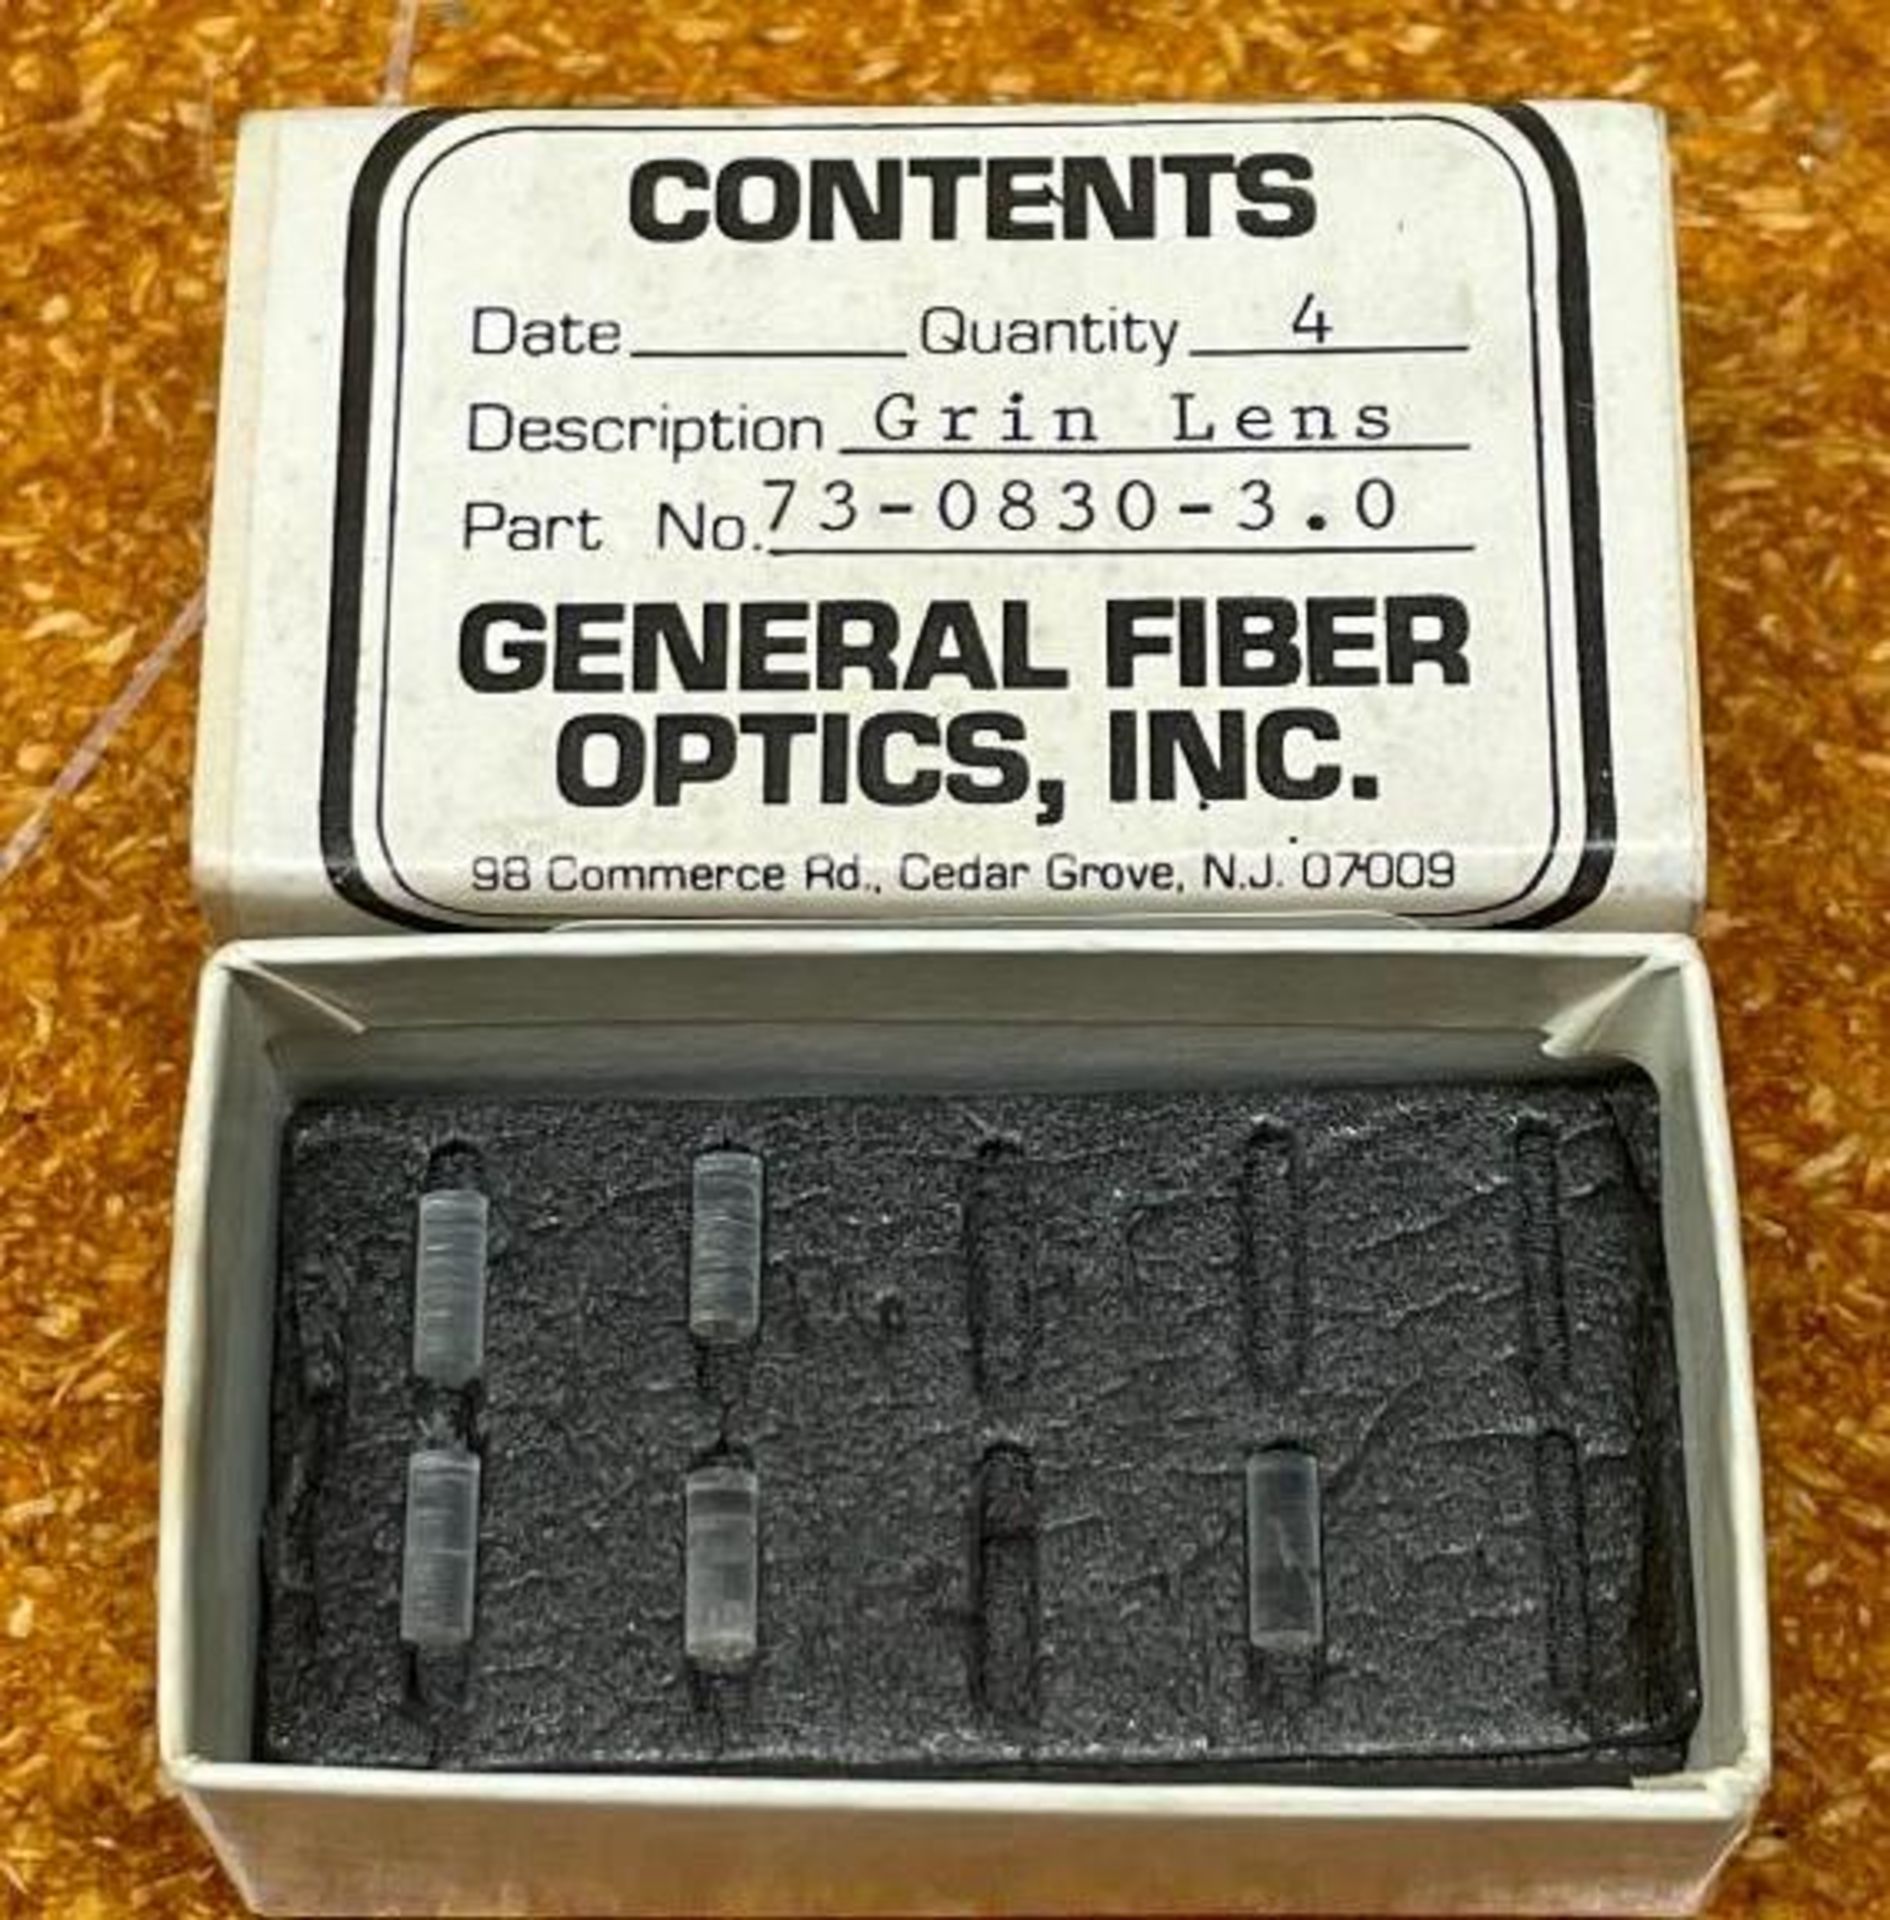 (5) GRIN LENSES BRAND/MODEL: GENERAL FIBER OPTICS 73-0830-3.0 INFORMATION: DIAMETER 3mm, LENGTH 8mm